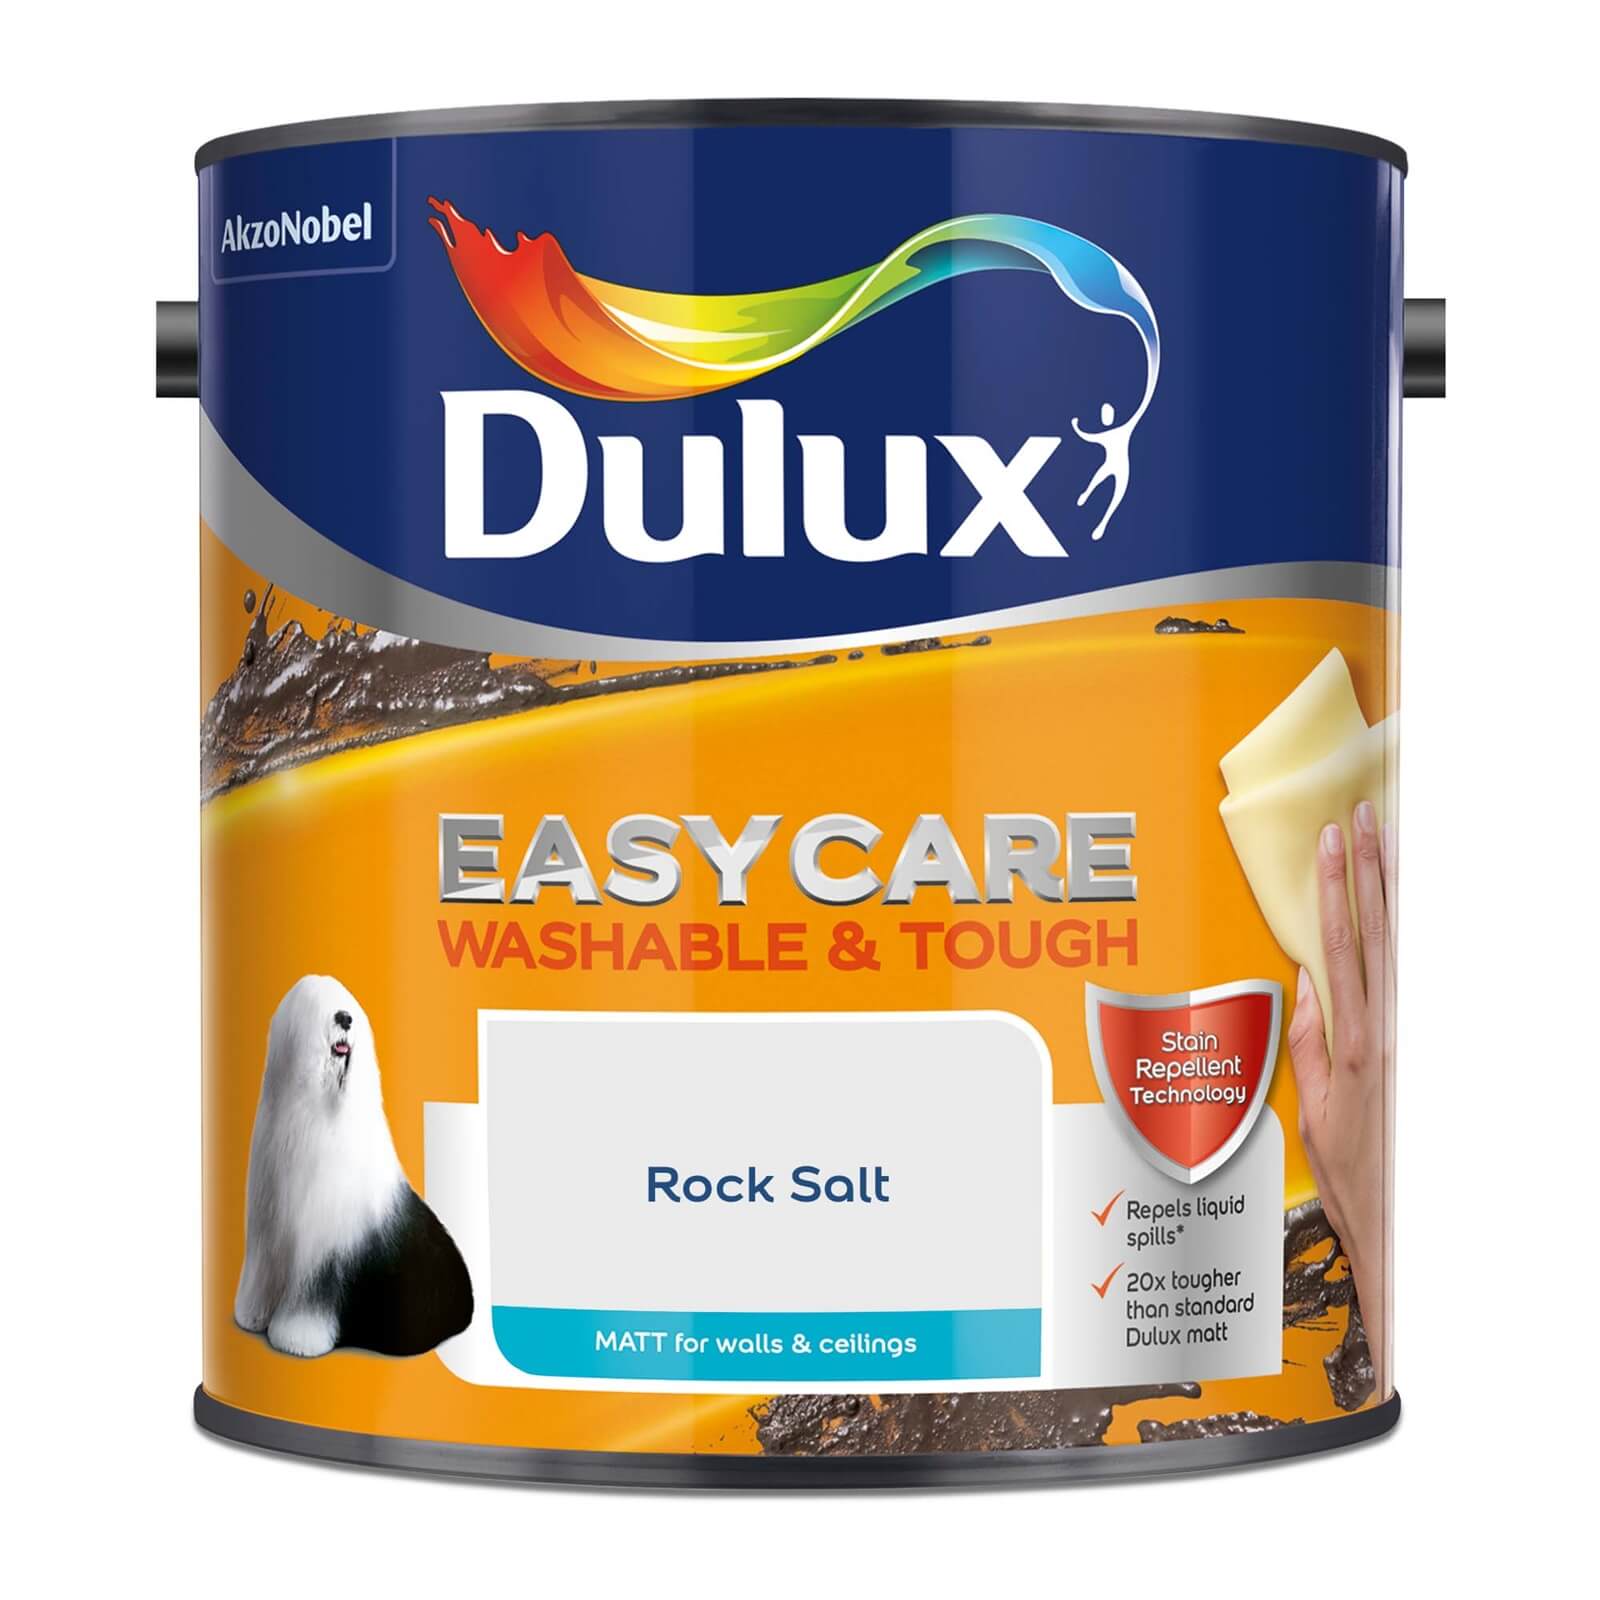 Dulux Easycare Washable & Tough Matt Paint Rock Salt - 2.5L